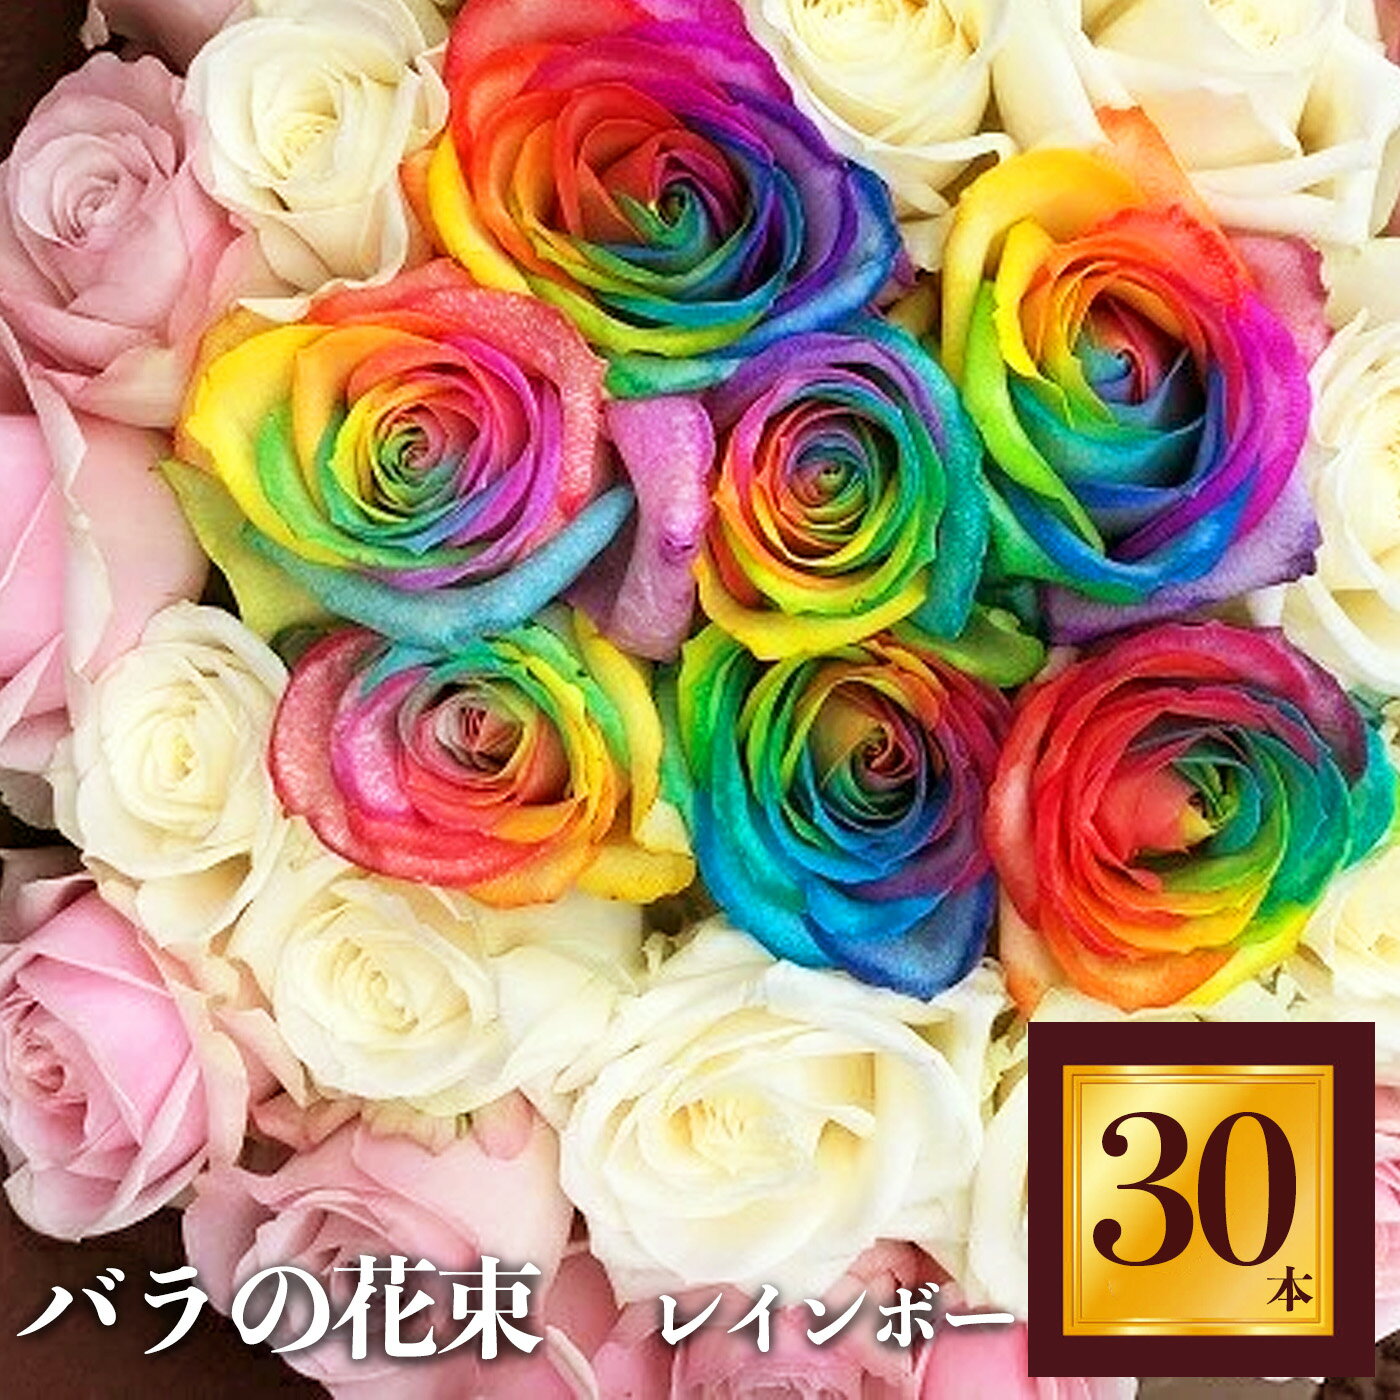 17位! 口コミ数「0件」評価「0」Heguri Rose バラの花束 30本（レインボー7本+白+淡いピンク）ローズ フラワー 薔薇 新鮮 高品質 綺麗 平群のバラ 花束 平･･･ 